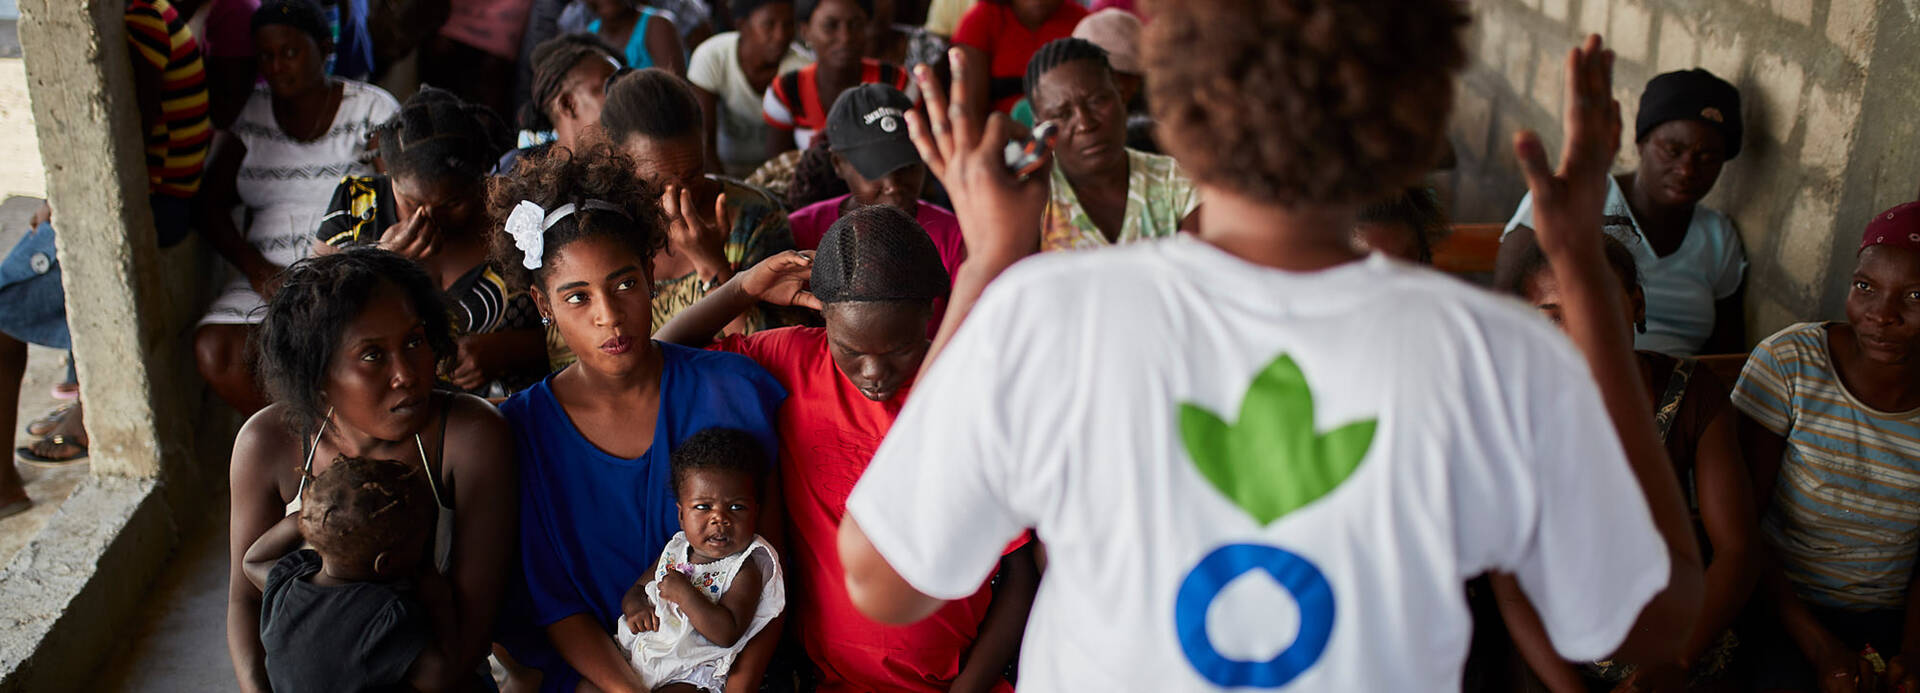 Eine Mitarbeiterin von Aktion gegen den Hunger erklärt einer Gruppe Frauen, Männer und Kinder aus Haiti, wie sie sich mit gesunder Ernährung und Hygiene vor Cholera schützen können.